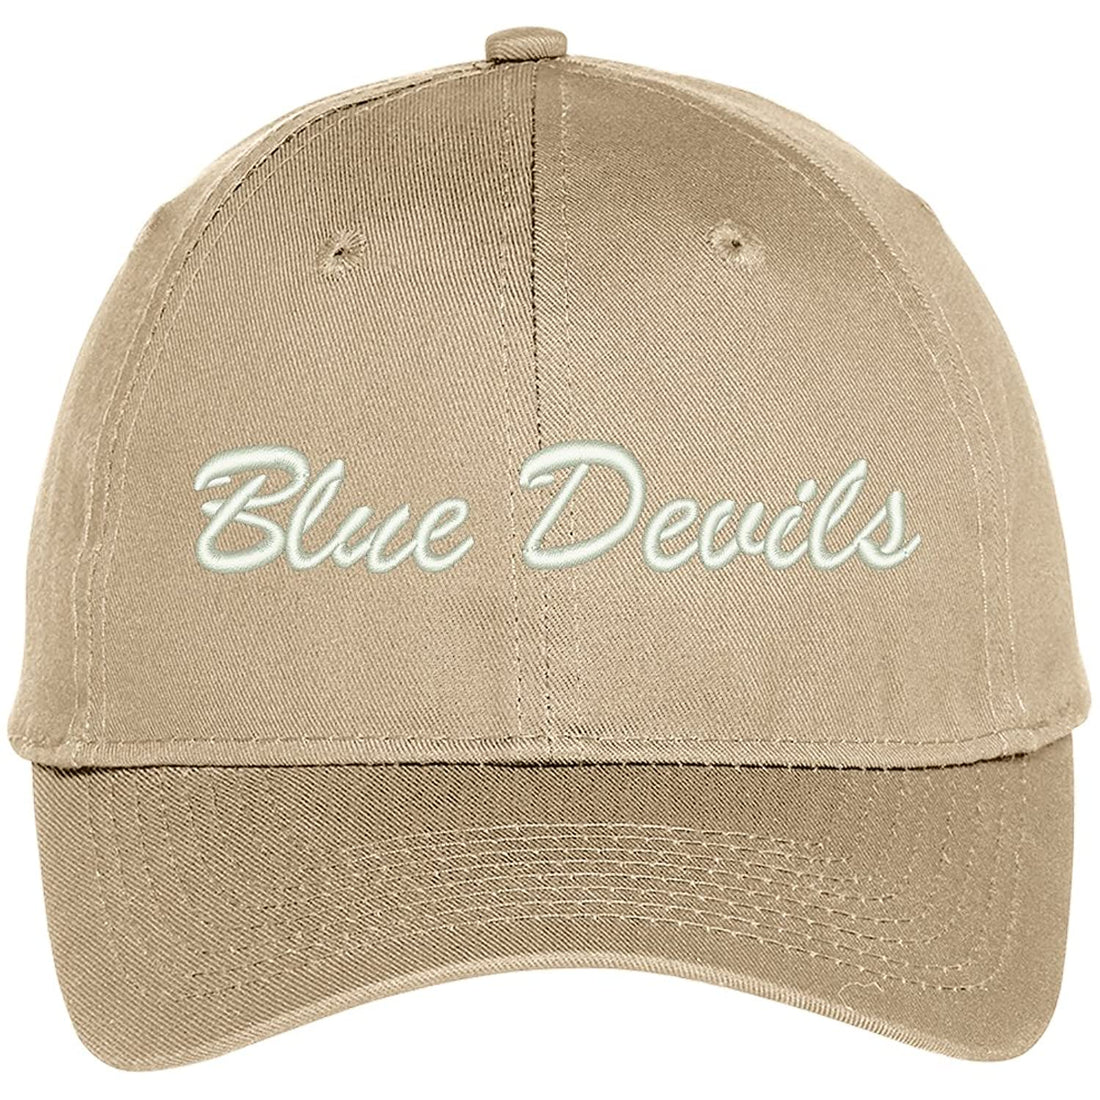 Trendy Apparel Shop Bleu Devils Embroidered Team Nickname Mascot Cap